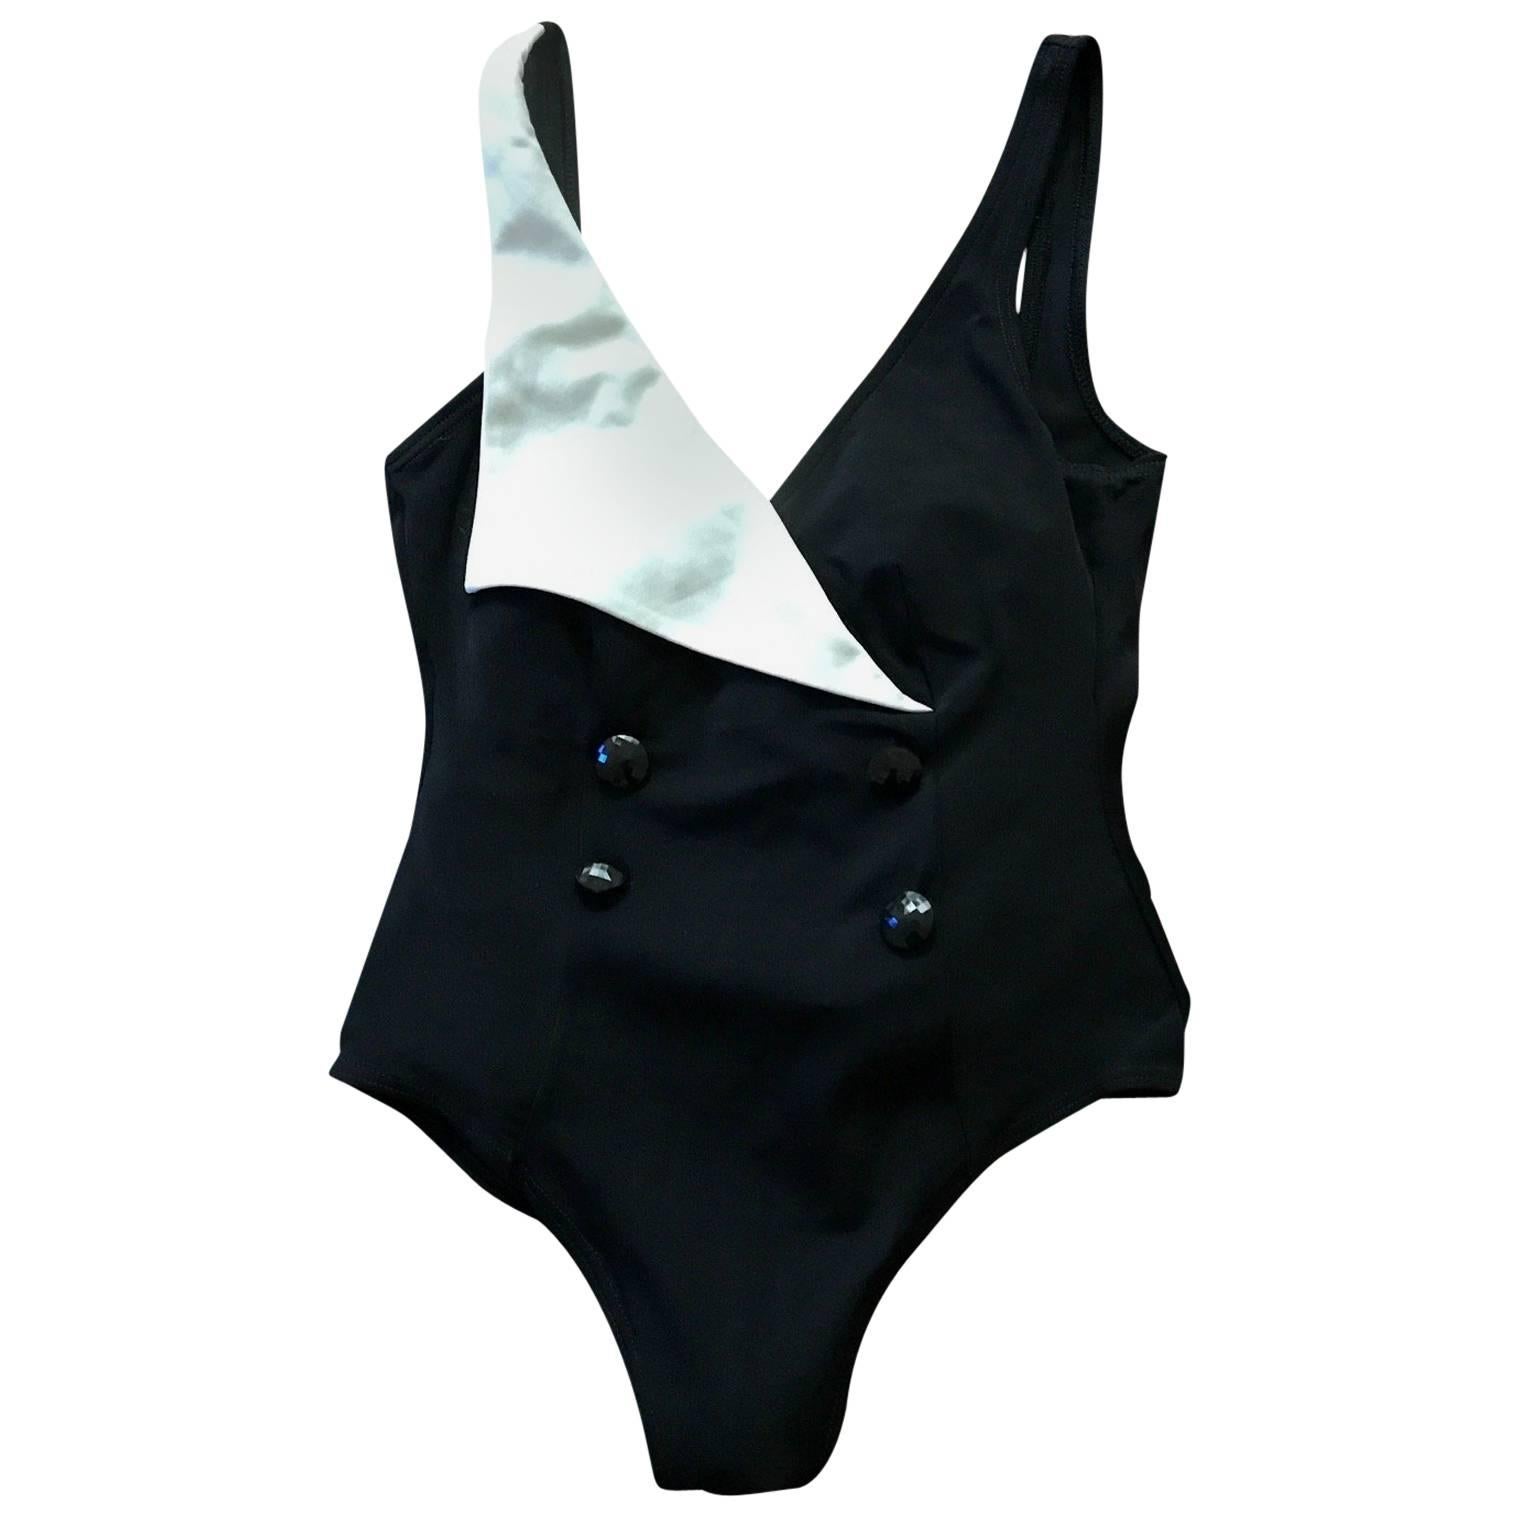 Yves Saint Laurent 1980s Tuxedo Inspired Black and White Swimming Suit Bathing